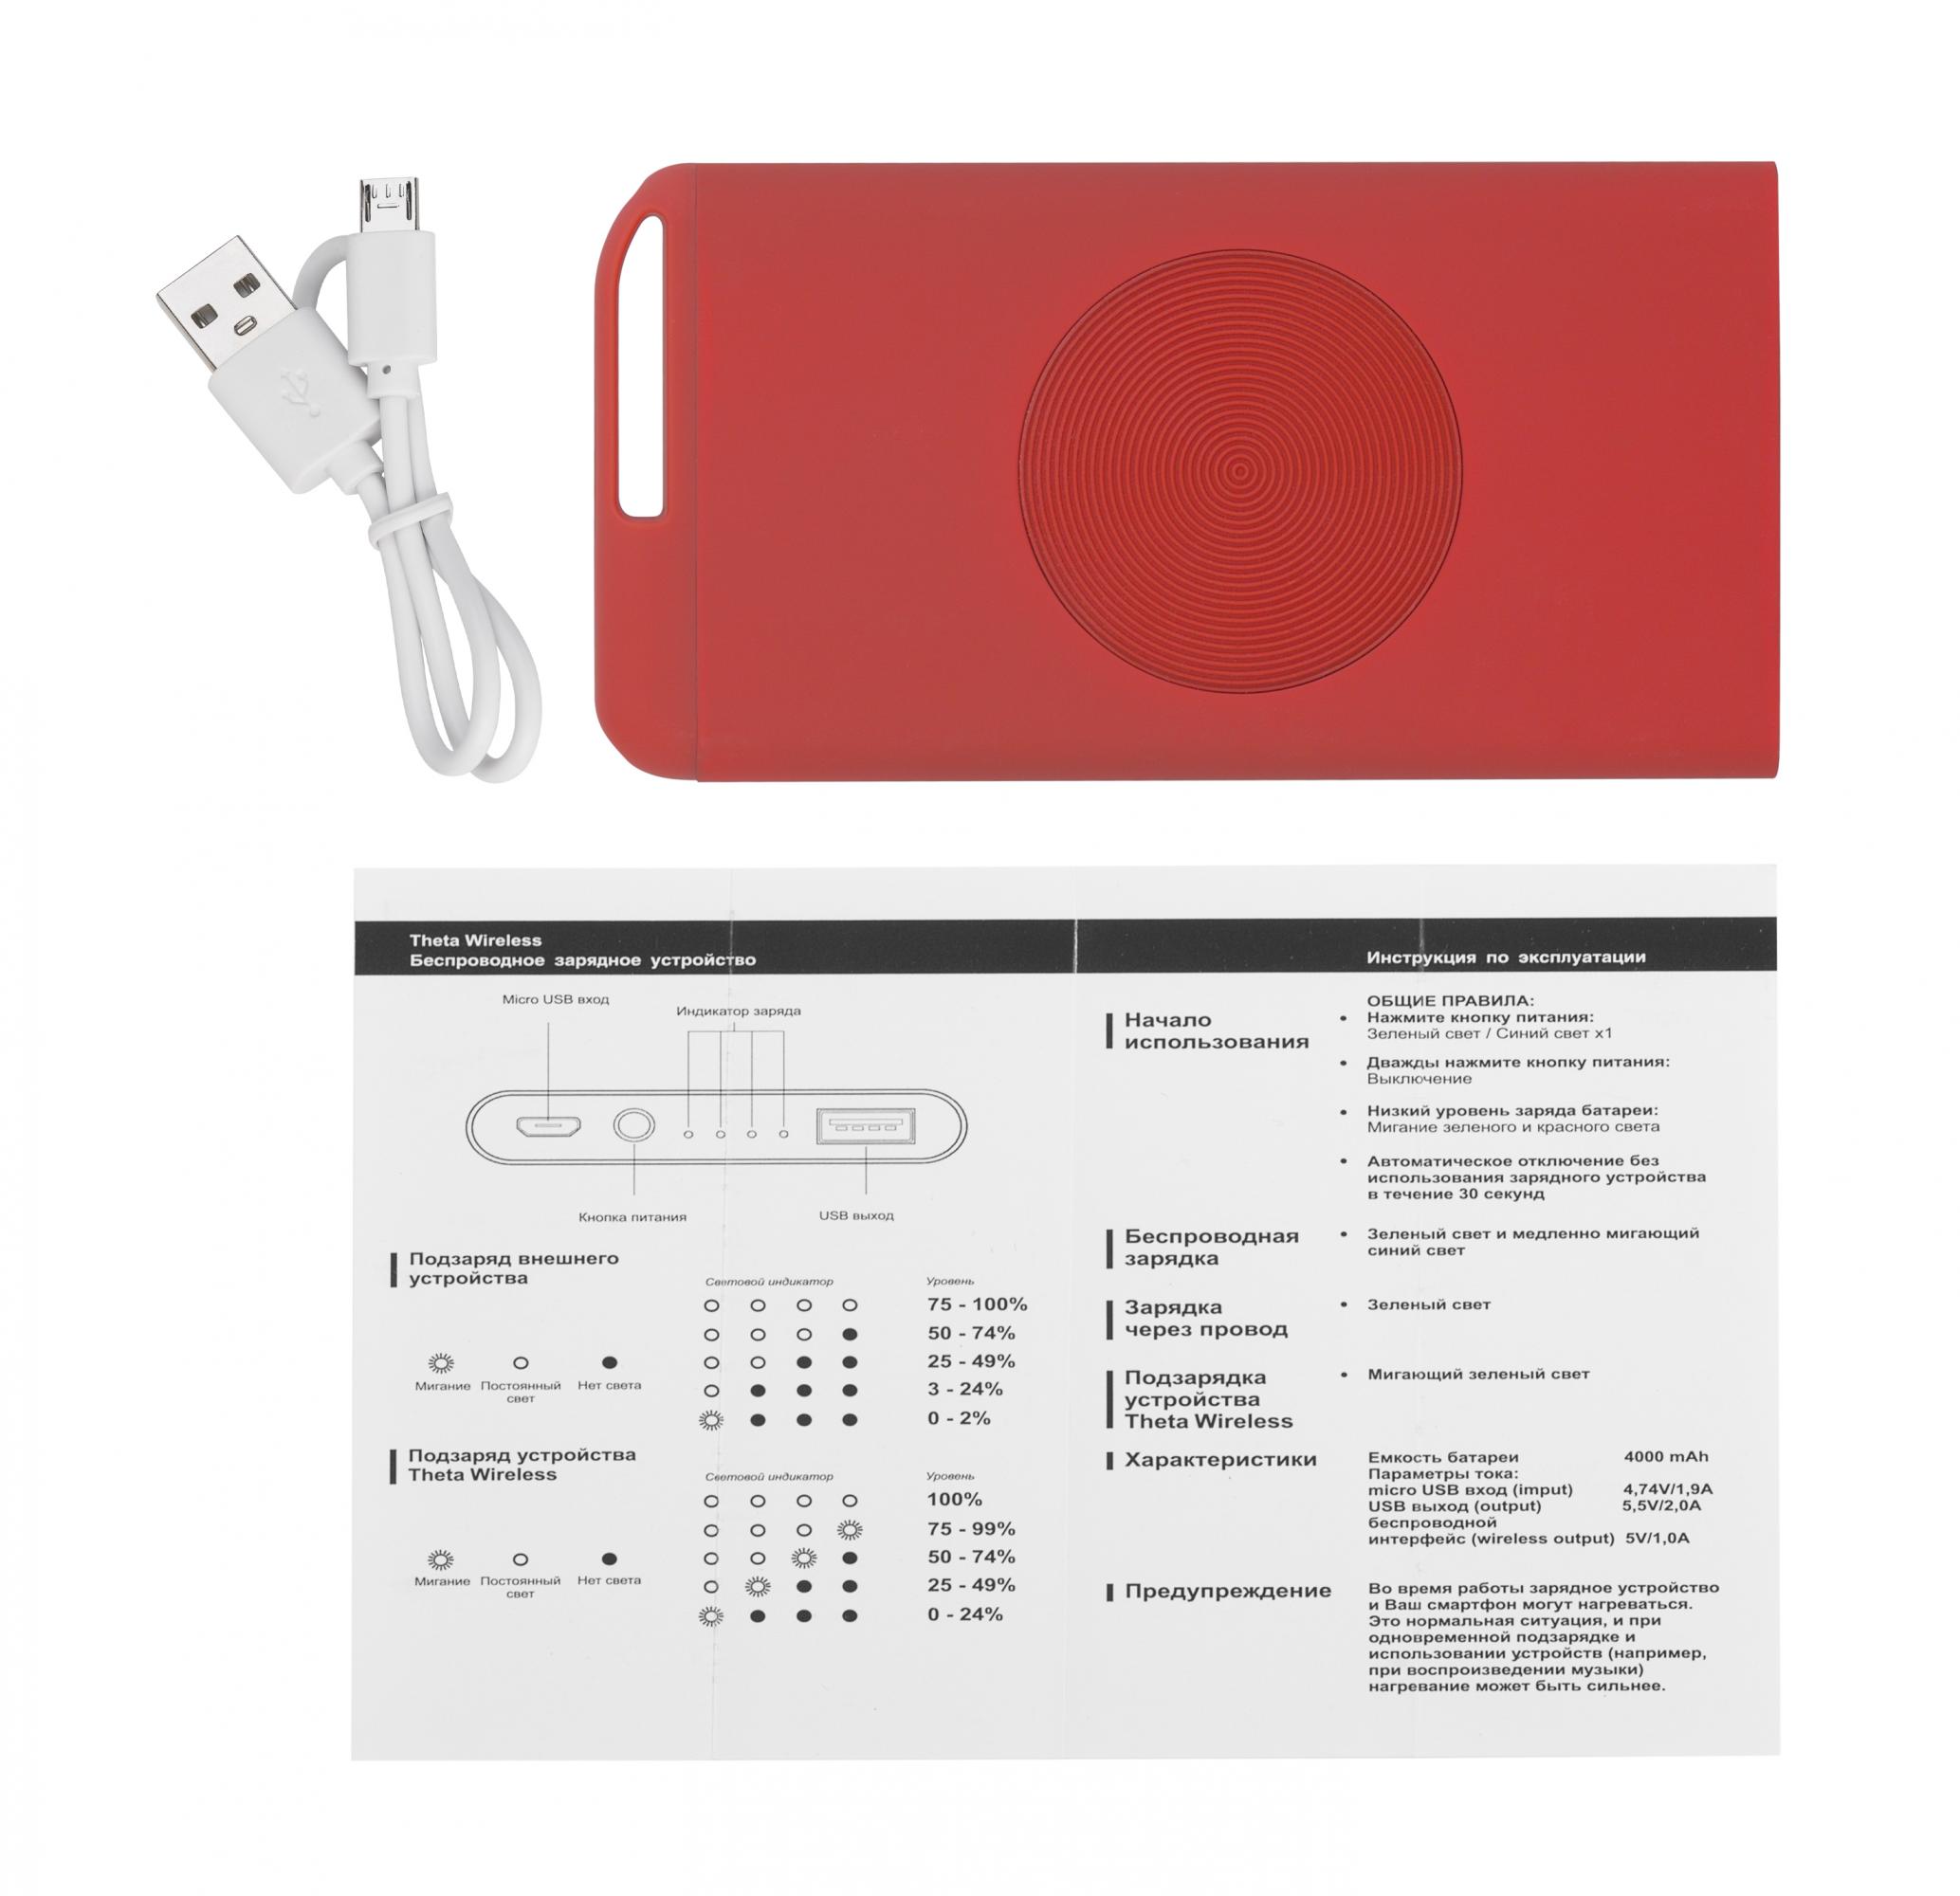 Беспроводное зарядное устройство "Theta Wireless", 4000 mAh, цвет красный, фото 3